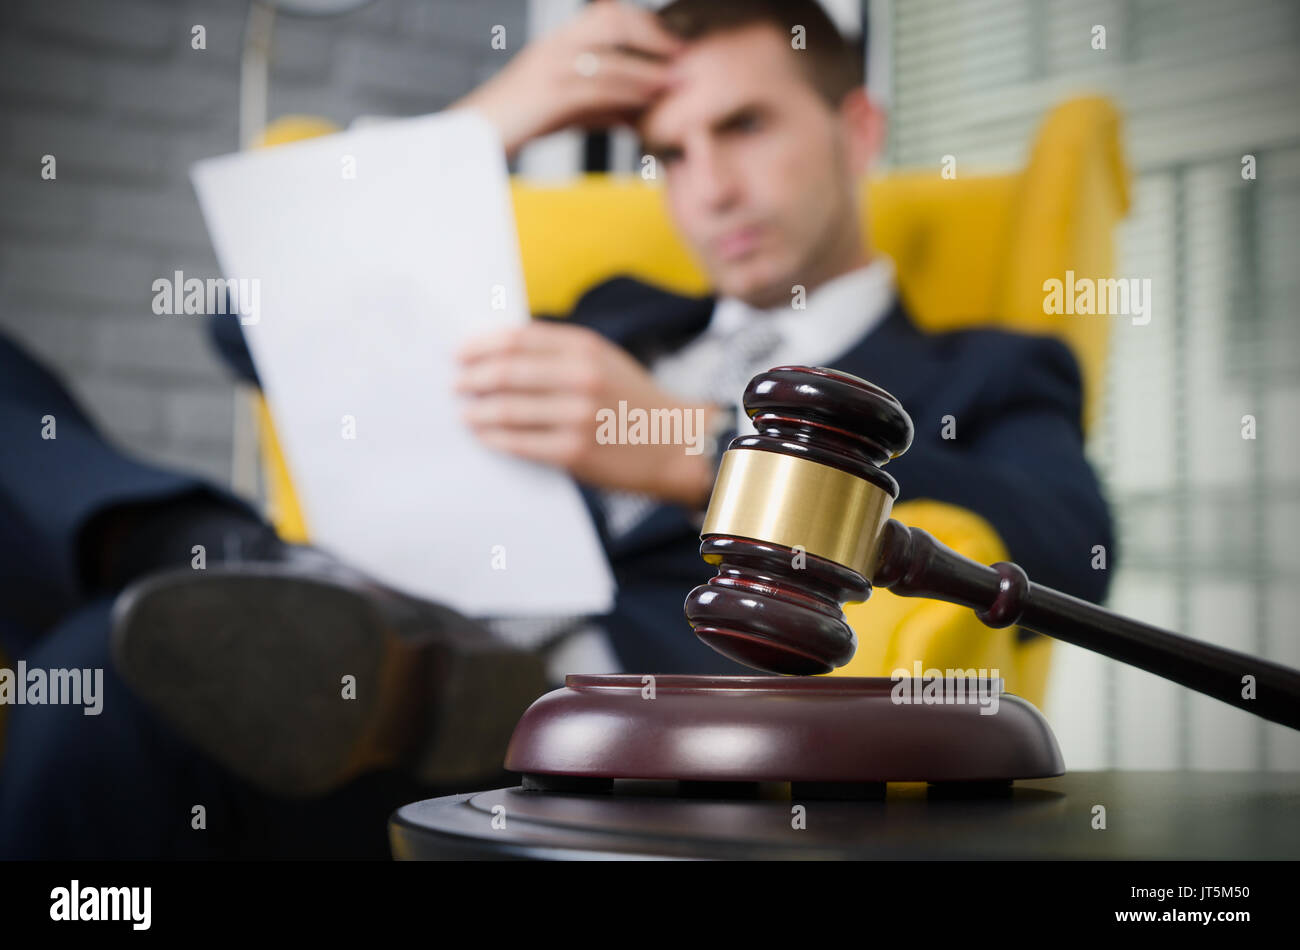 Hölzerne Hammer, Anwalt arbeiten im Hintergrund. Rechtsanwalt Geschäft Urteil Justiz Suite Analyse Behörde Hintergrund Konzept Stockfoto